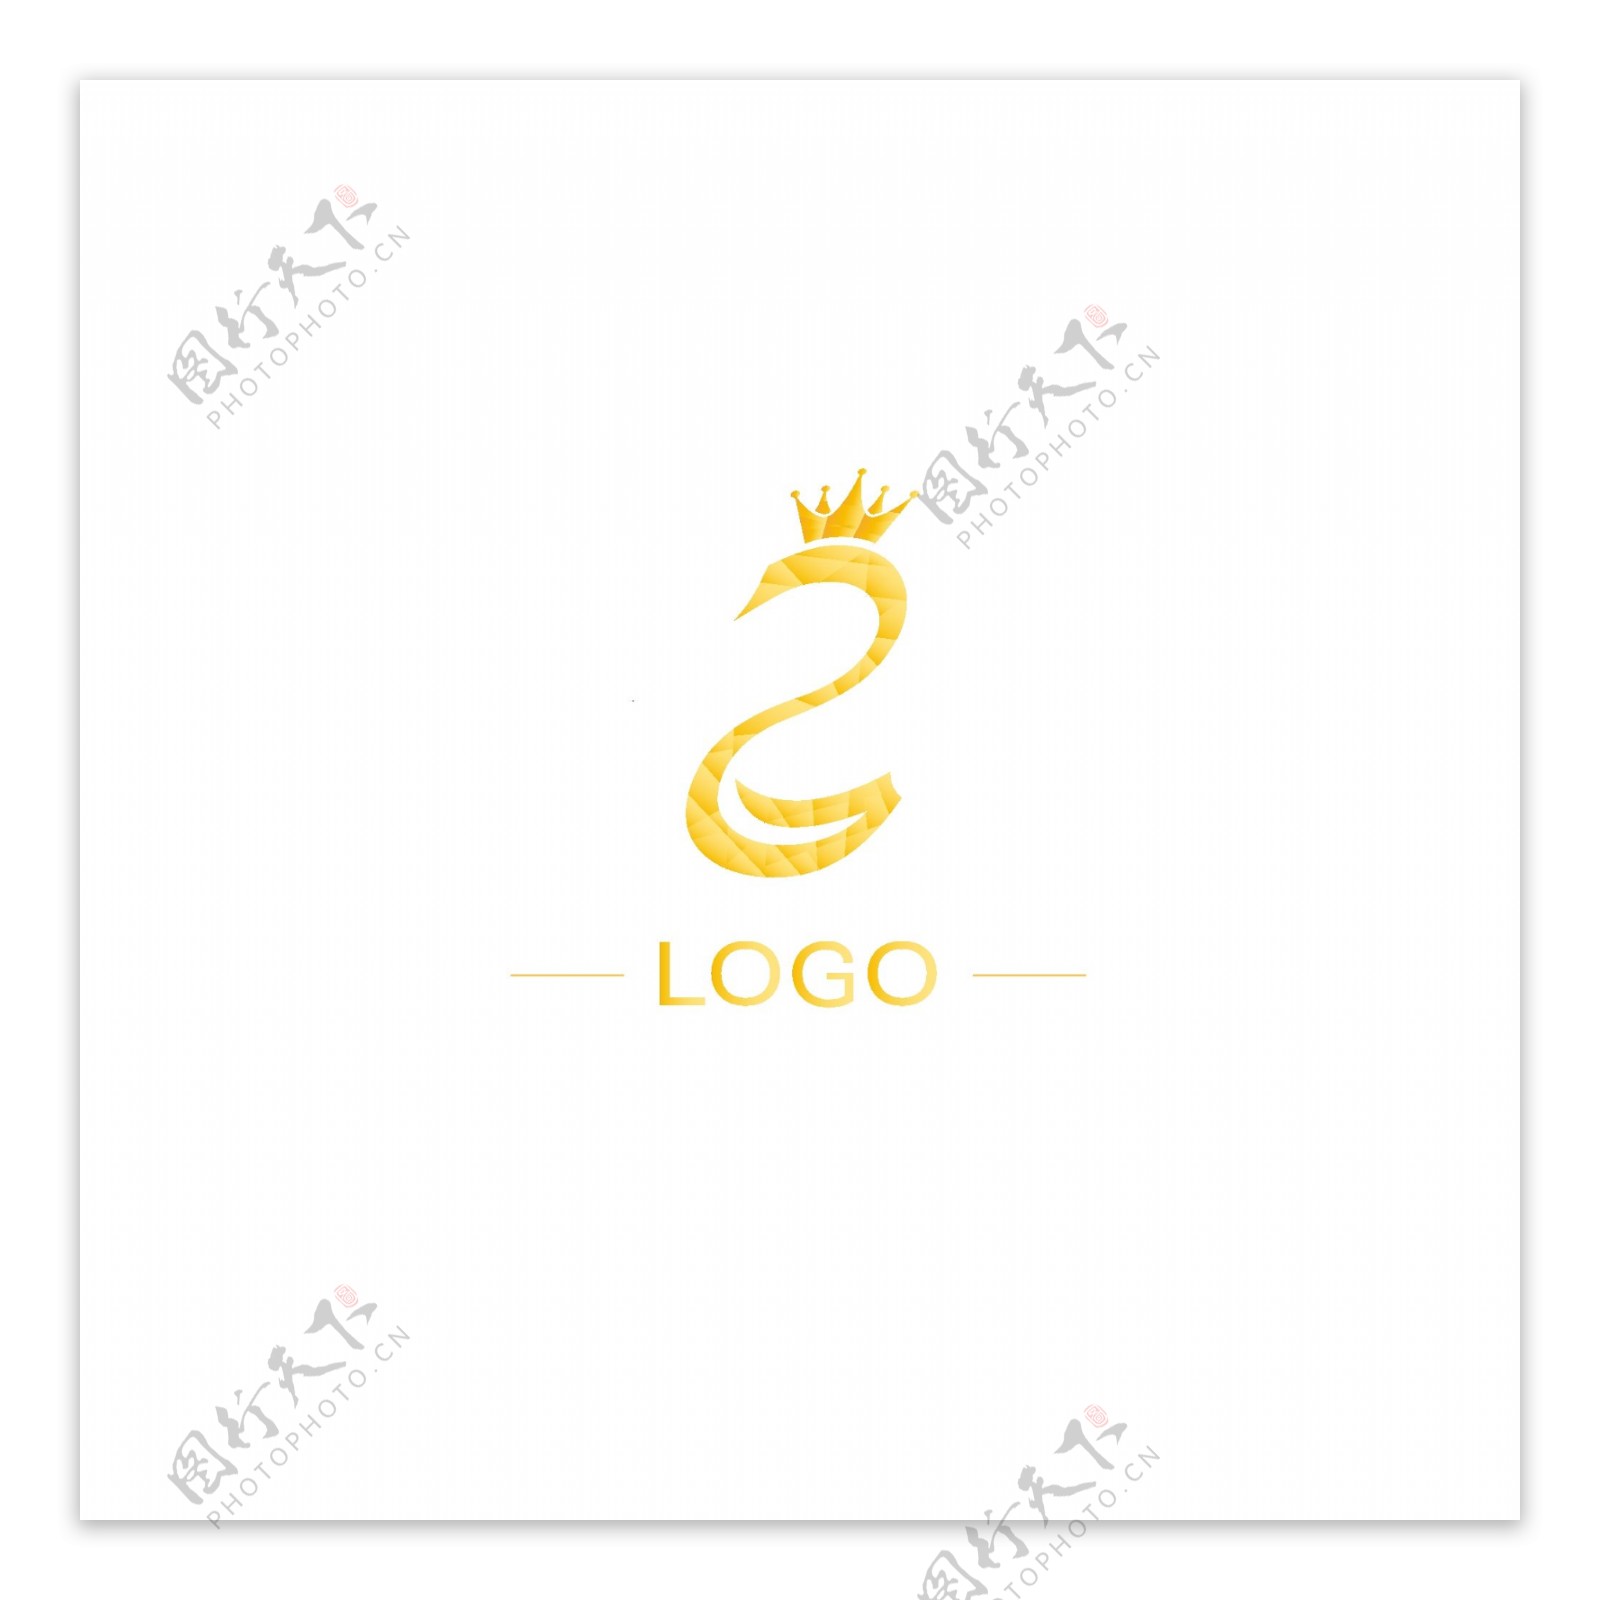 原创企业通用logo品牌标识设计